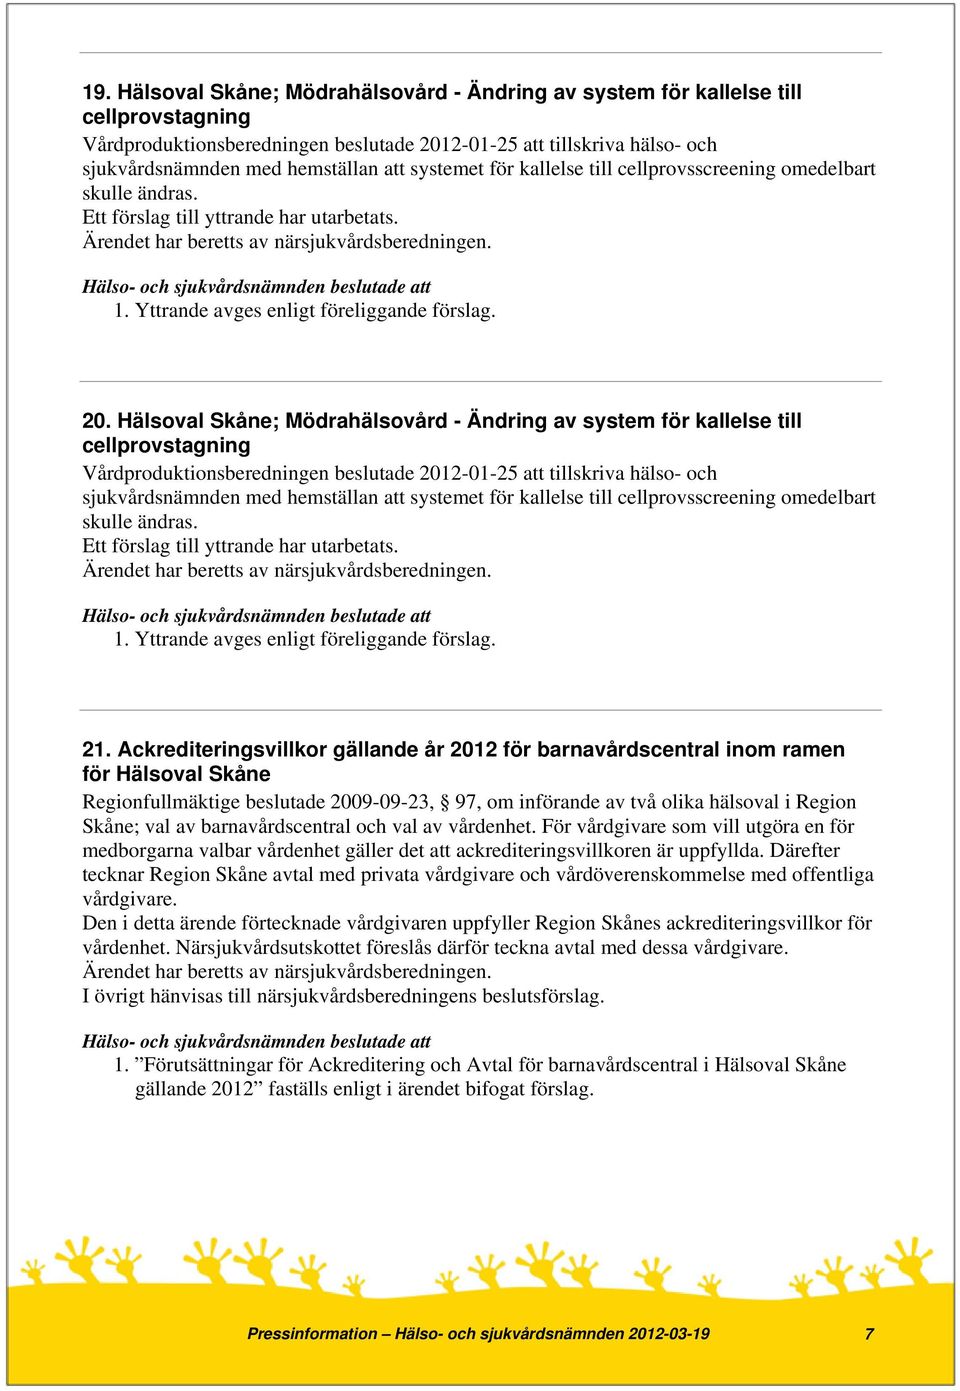 Hälsoval Skåne; Mödrahälsovård - Ändring av system för kallelse till cellprovstagning Vårdproduktionsberedningen beslutade 2012-01-25 att tillskriva hälso- och sjukvårdsnämnden med hemställan att